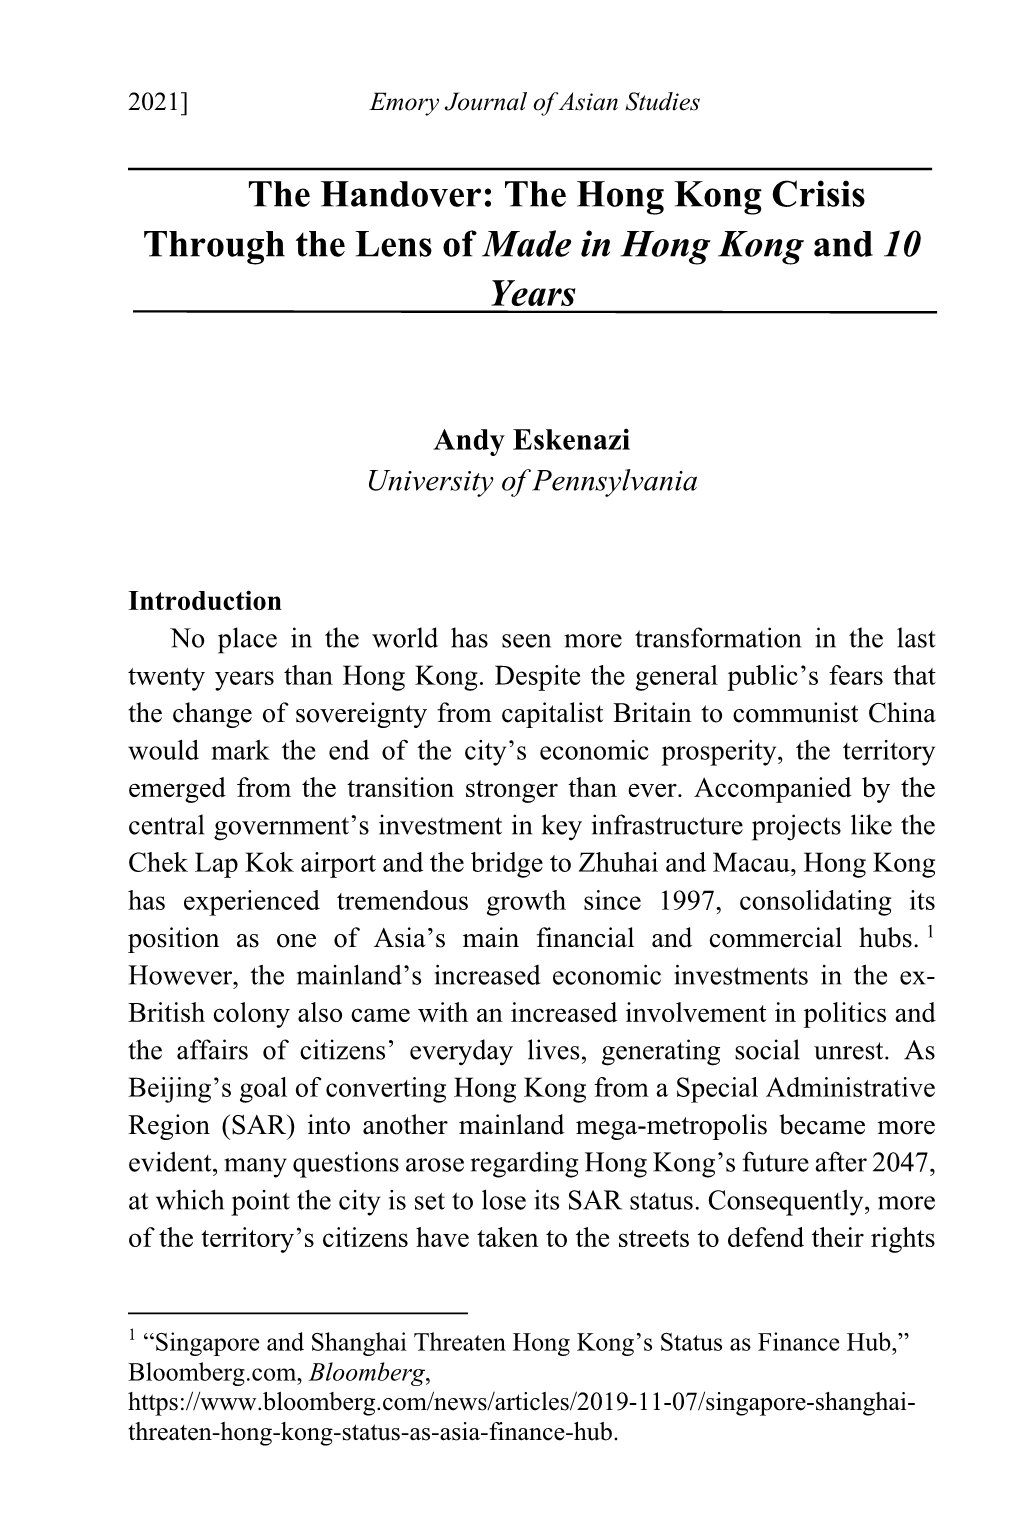 The Hong Kong Crisis Through the Lens of Made in Hong Kong and 10 Years